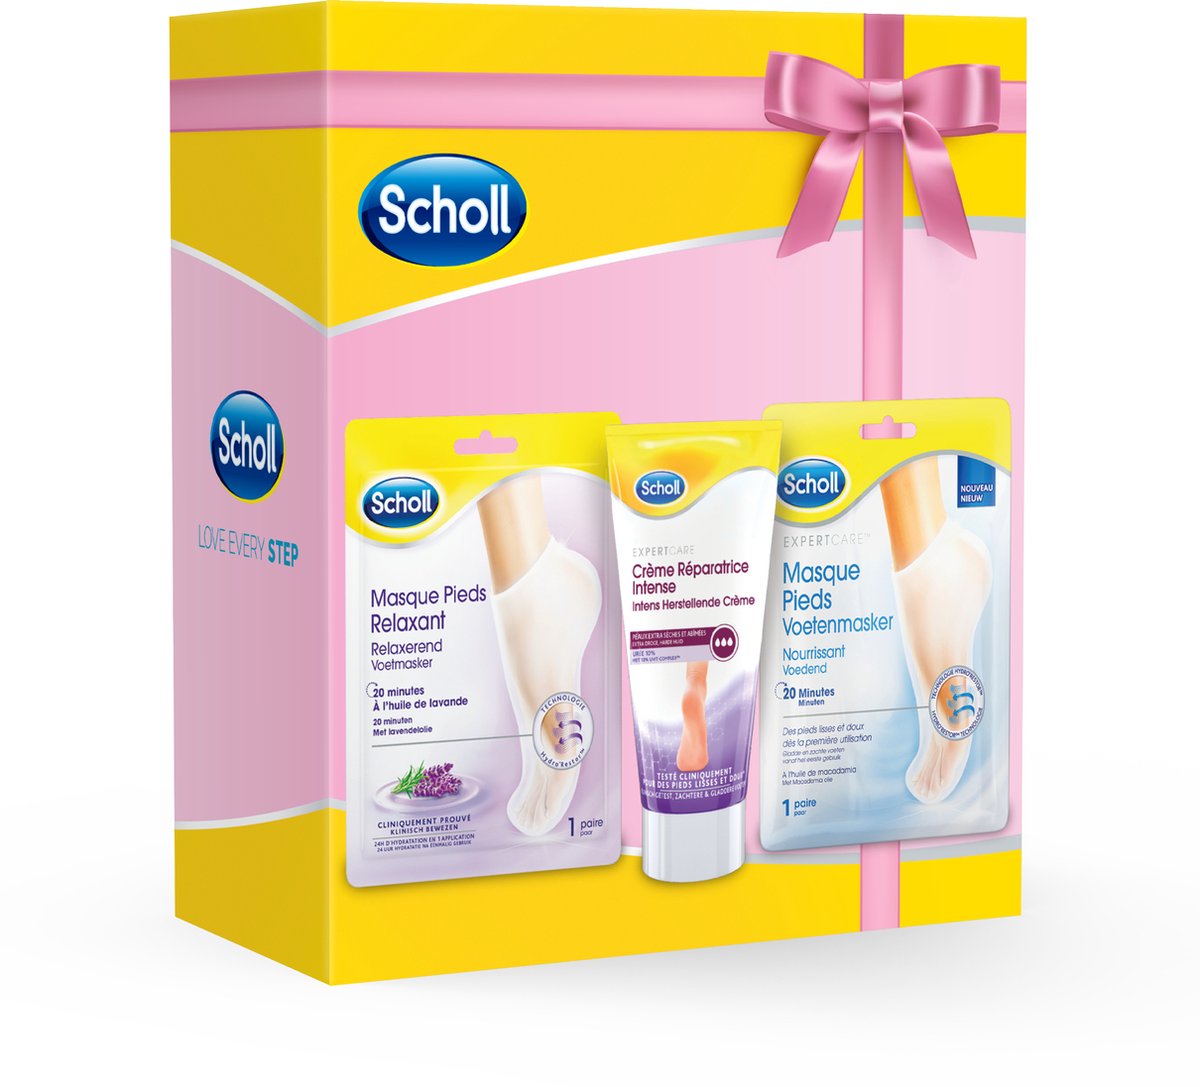 Scholl - Scholl gift pack (2 footmask + 1 Cream) - x2